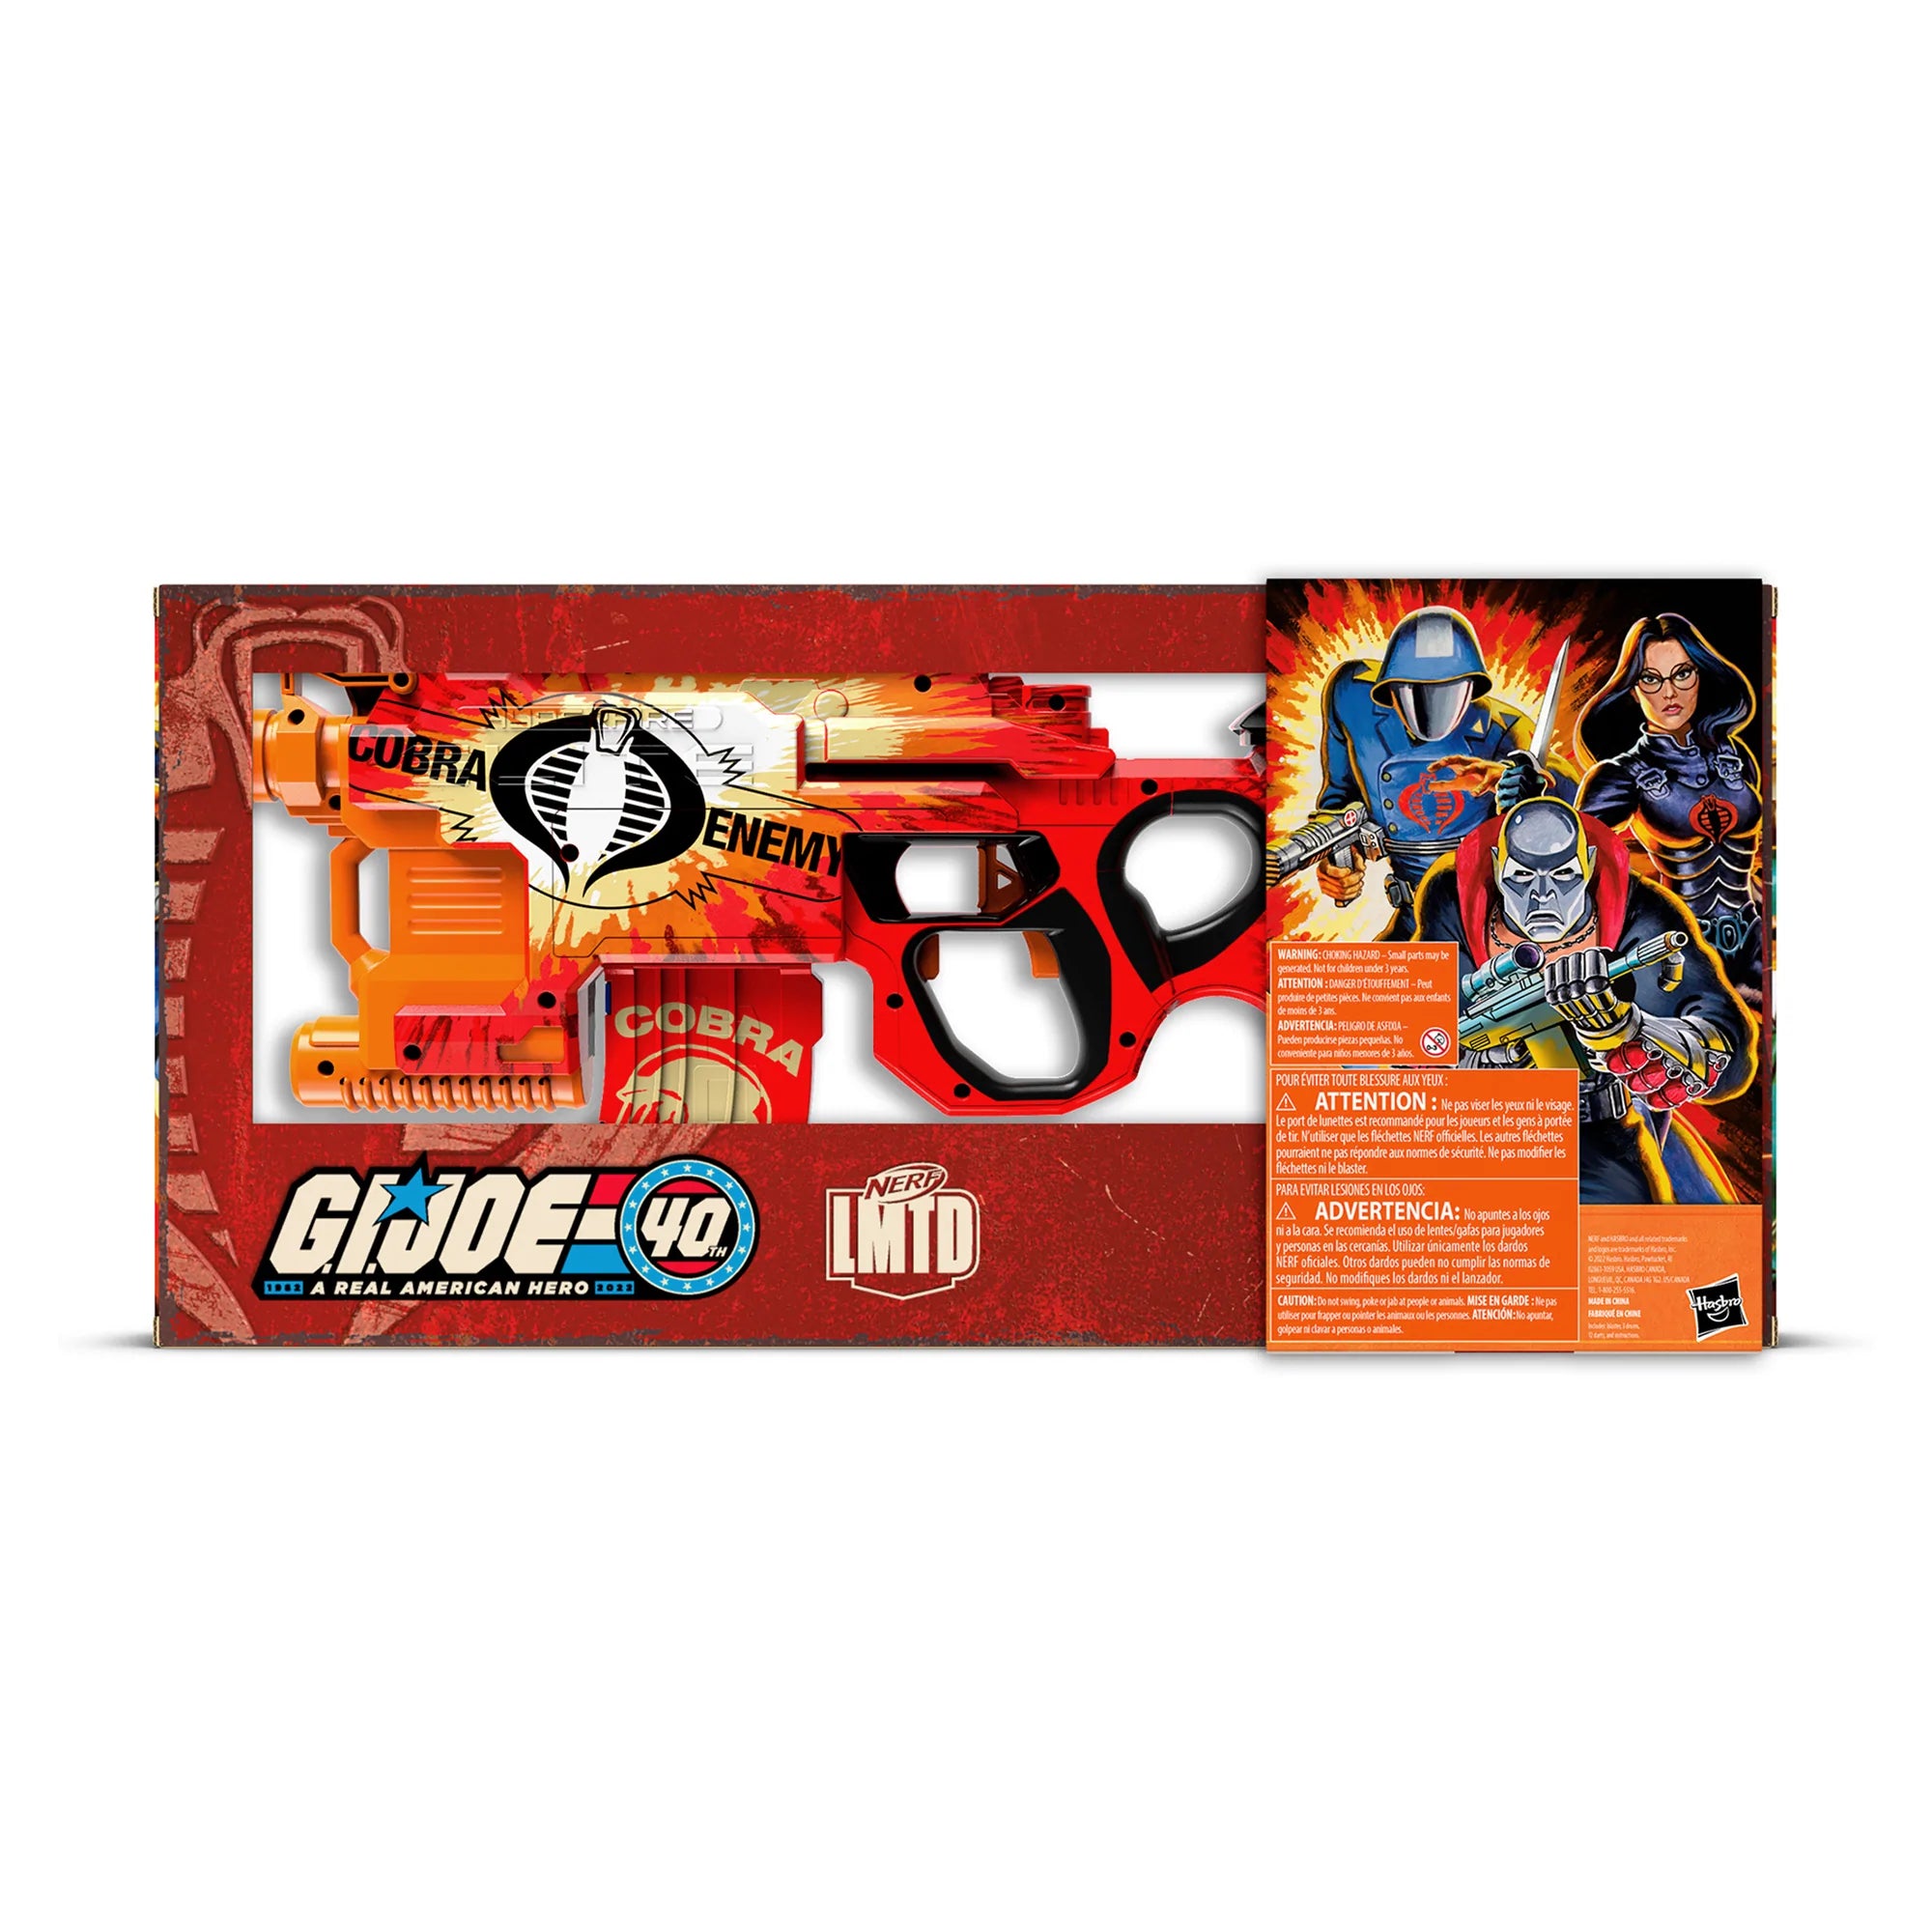 Hasbro - Nerf LMTD - G.I. Joe - GI-40 Blaster - Marvelous Toys